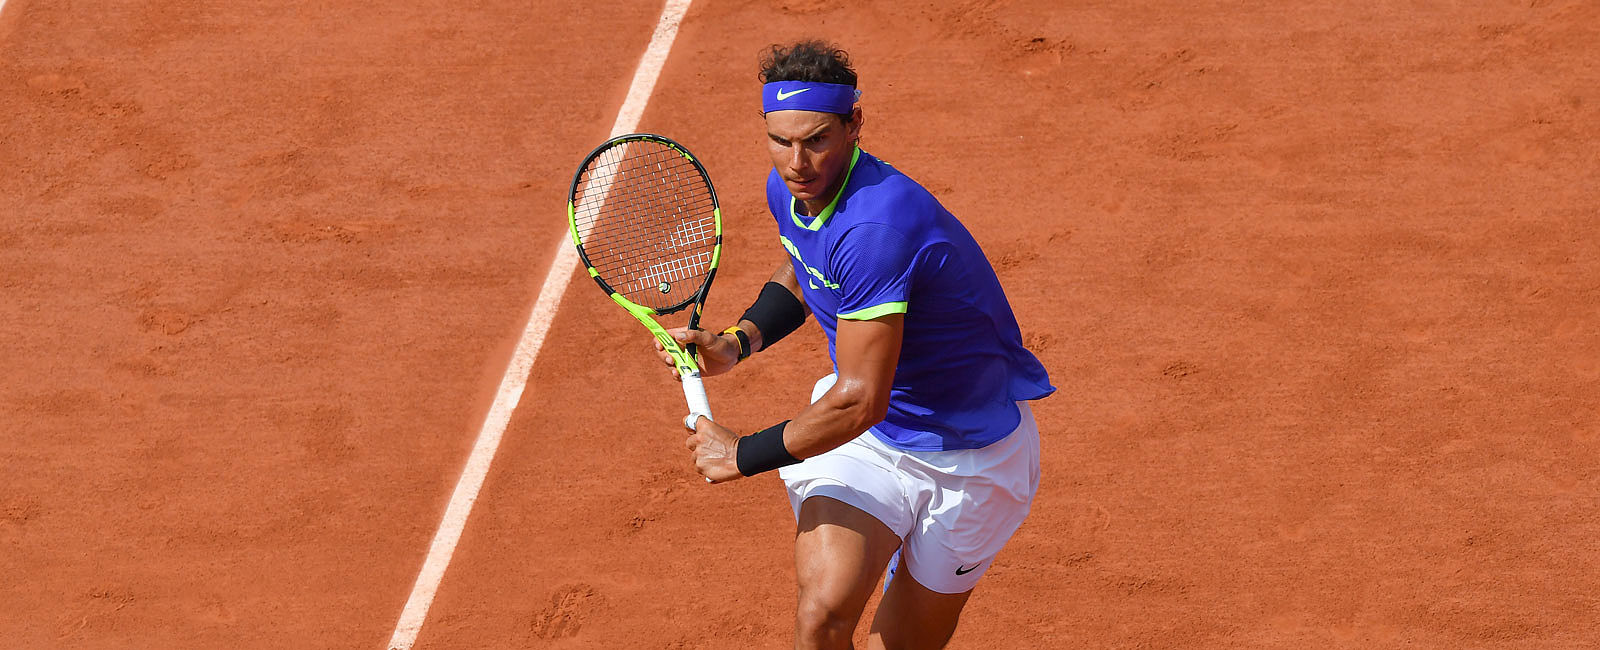 HOTEL NEWS
 Tennis-Ikone Rafael Nadal kooperiert mit dem Sani Resort  
